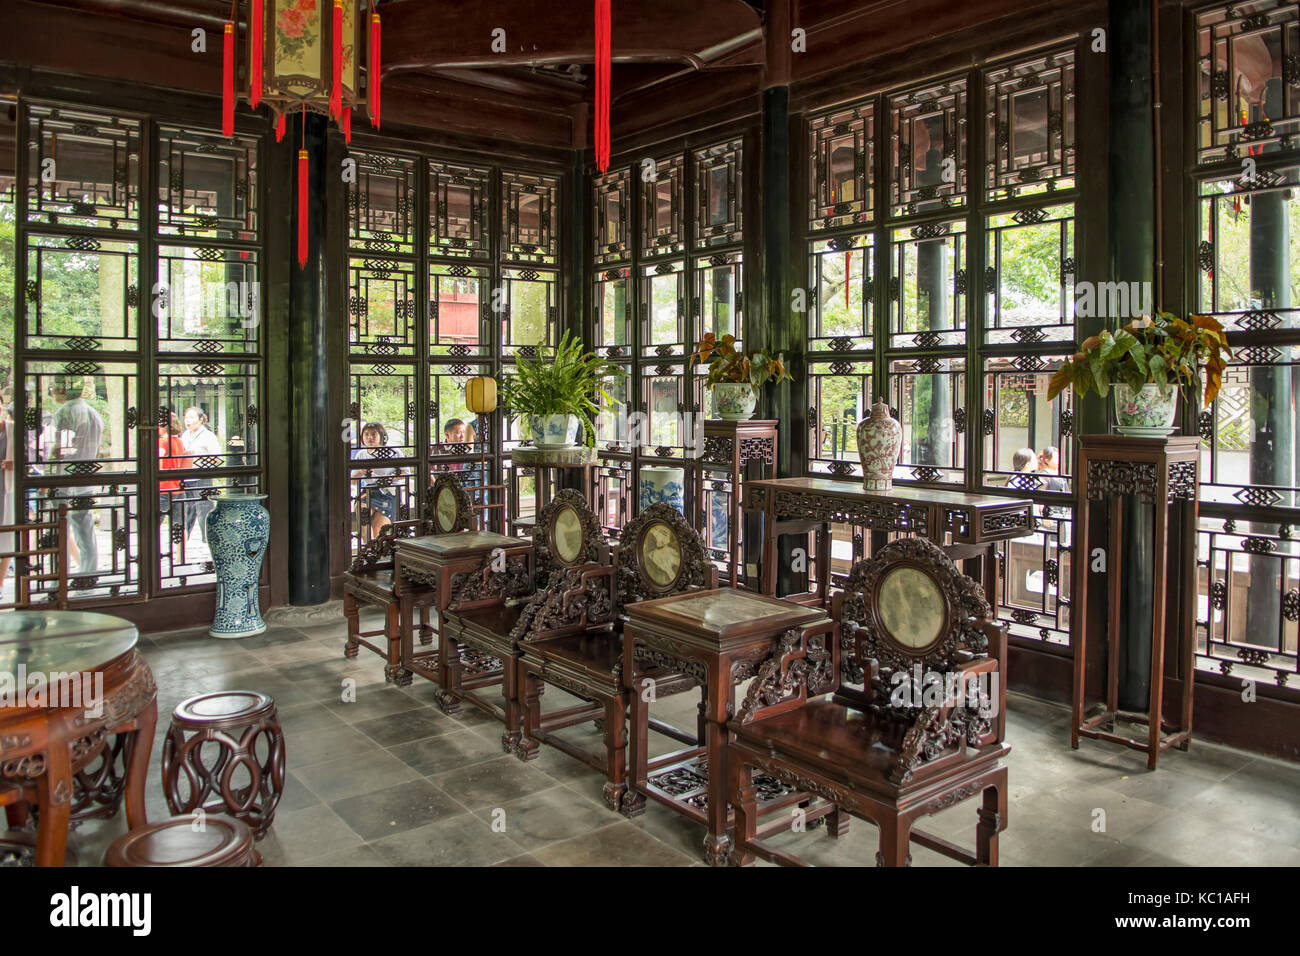 Sala della fragranza distanti, umile administrator's garden, Suzhou, Cina Foto Stock